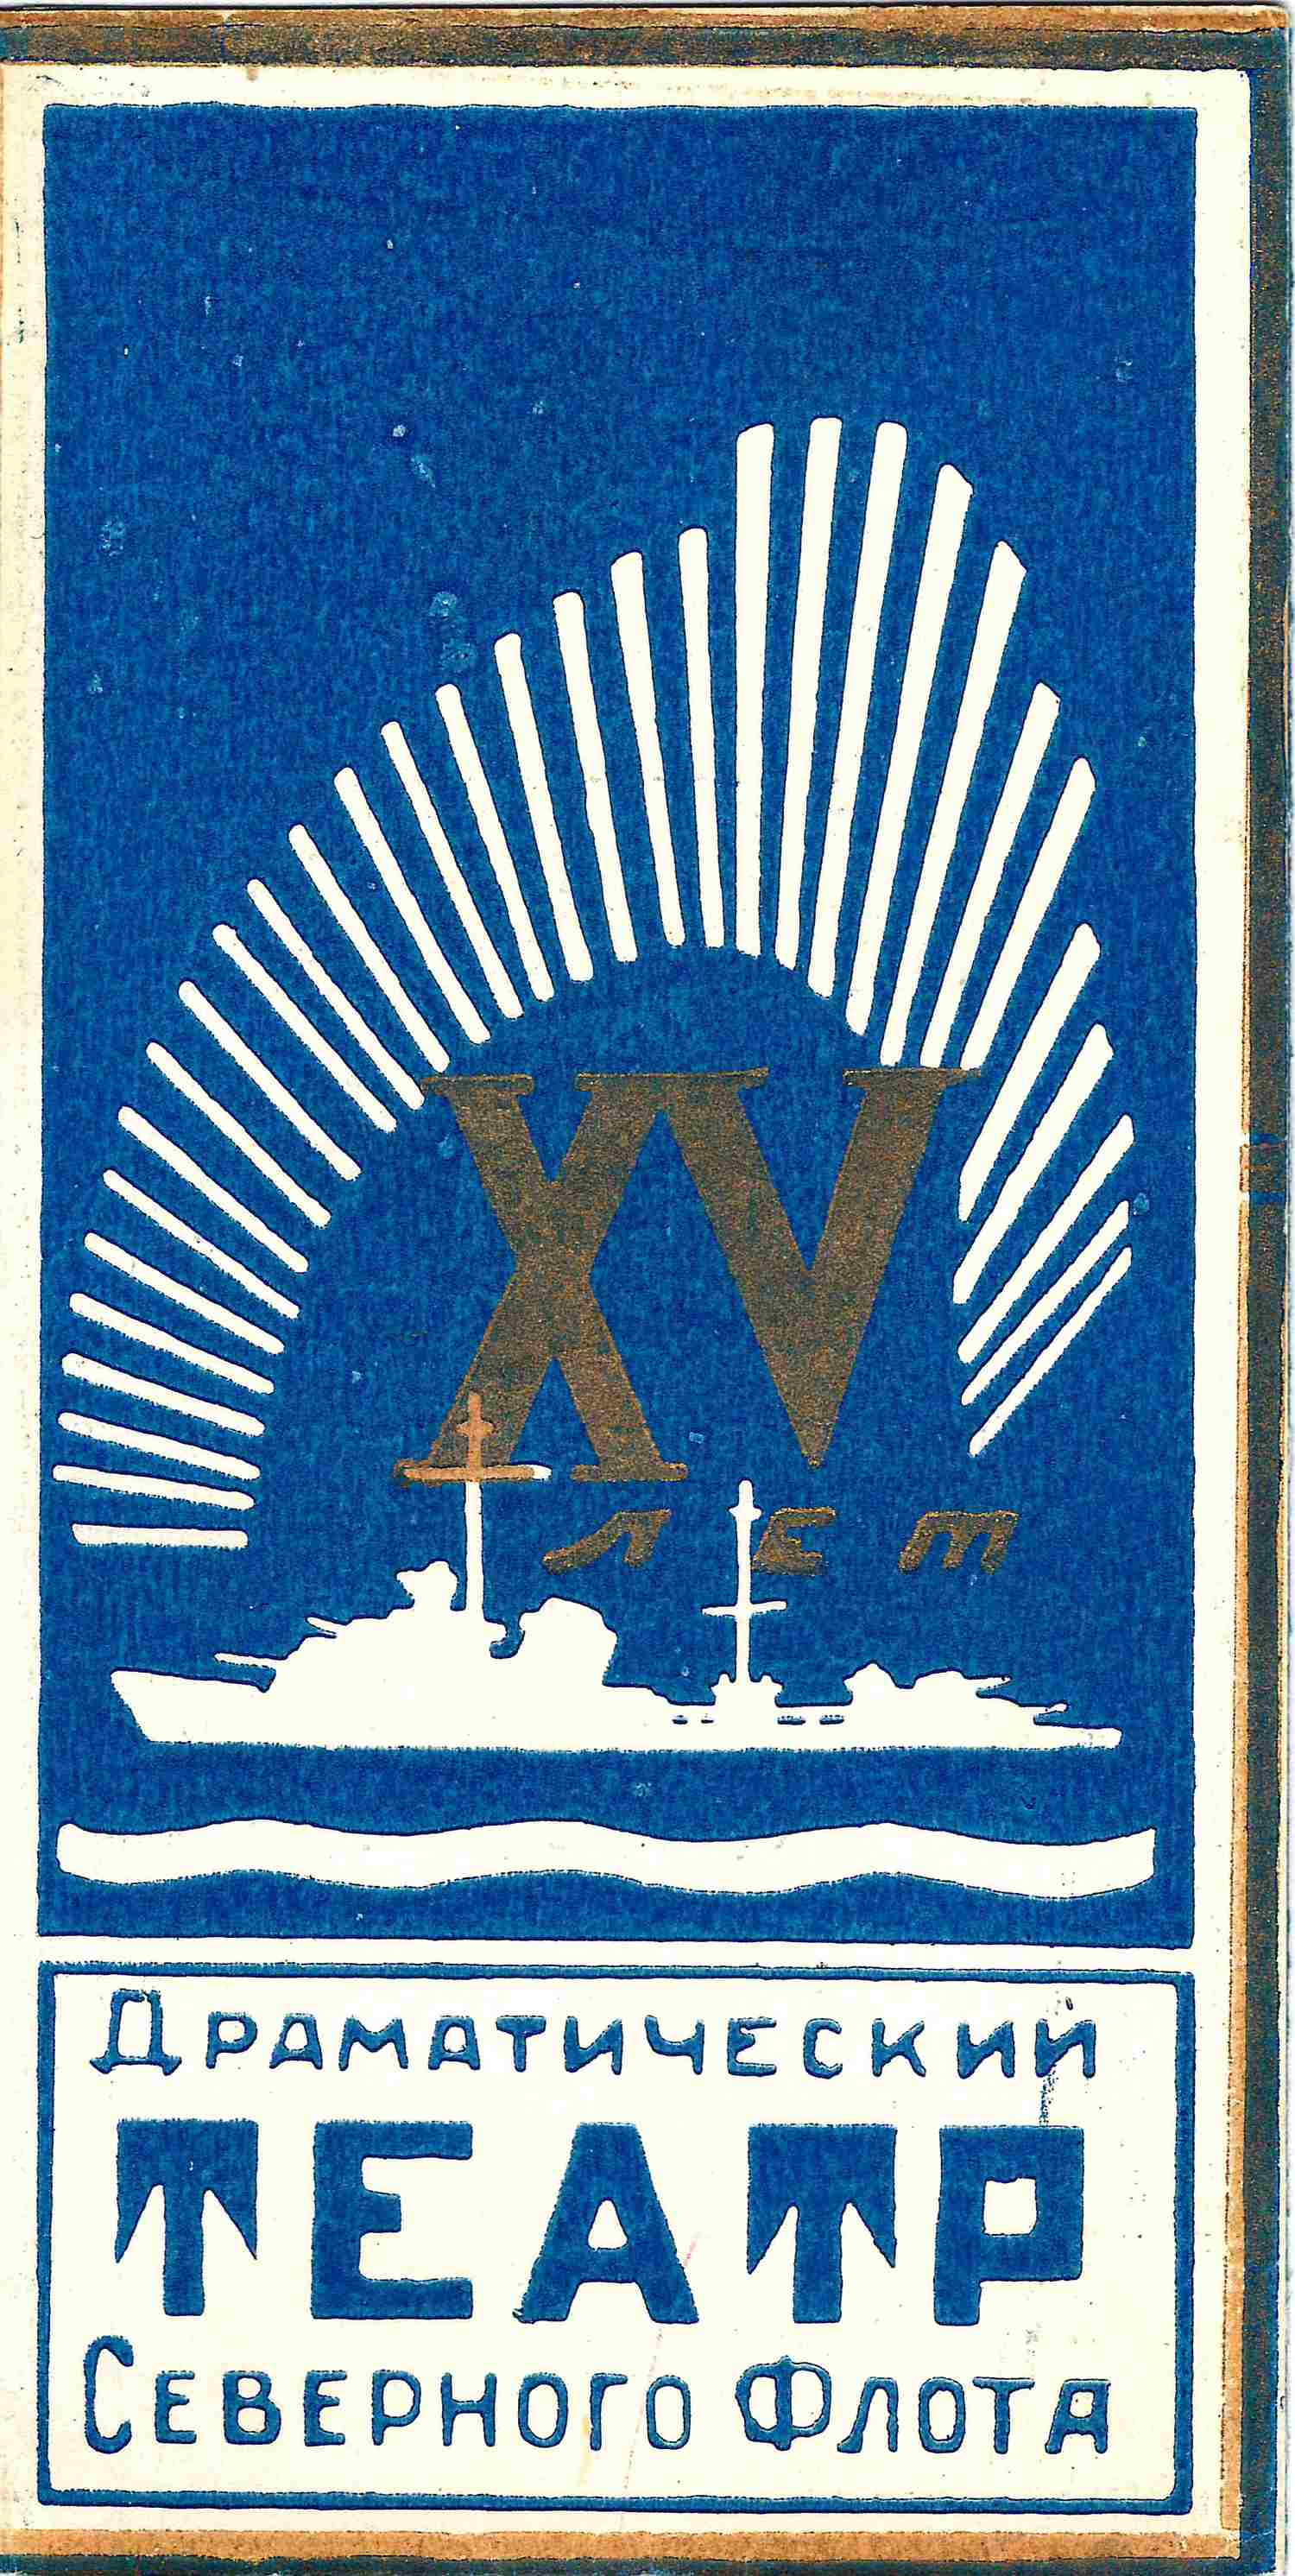 Приглашение на празднование пятнадцатилетия Драматического театра Северного флота 31 марта 1951 года в г. Ваенга на имя М.А. Зернова.